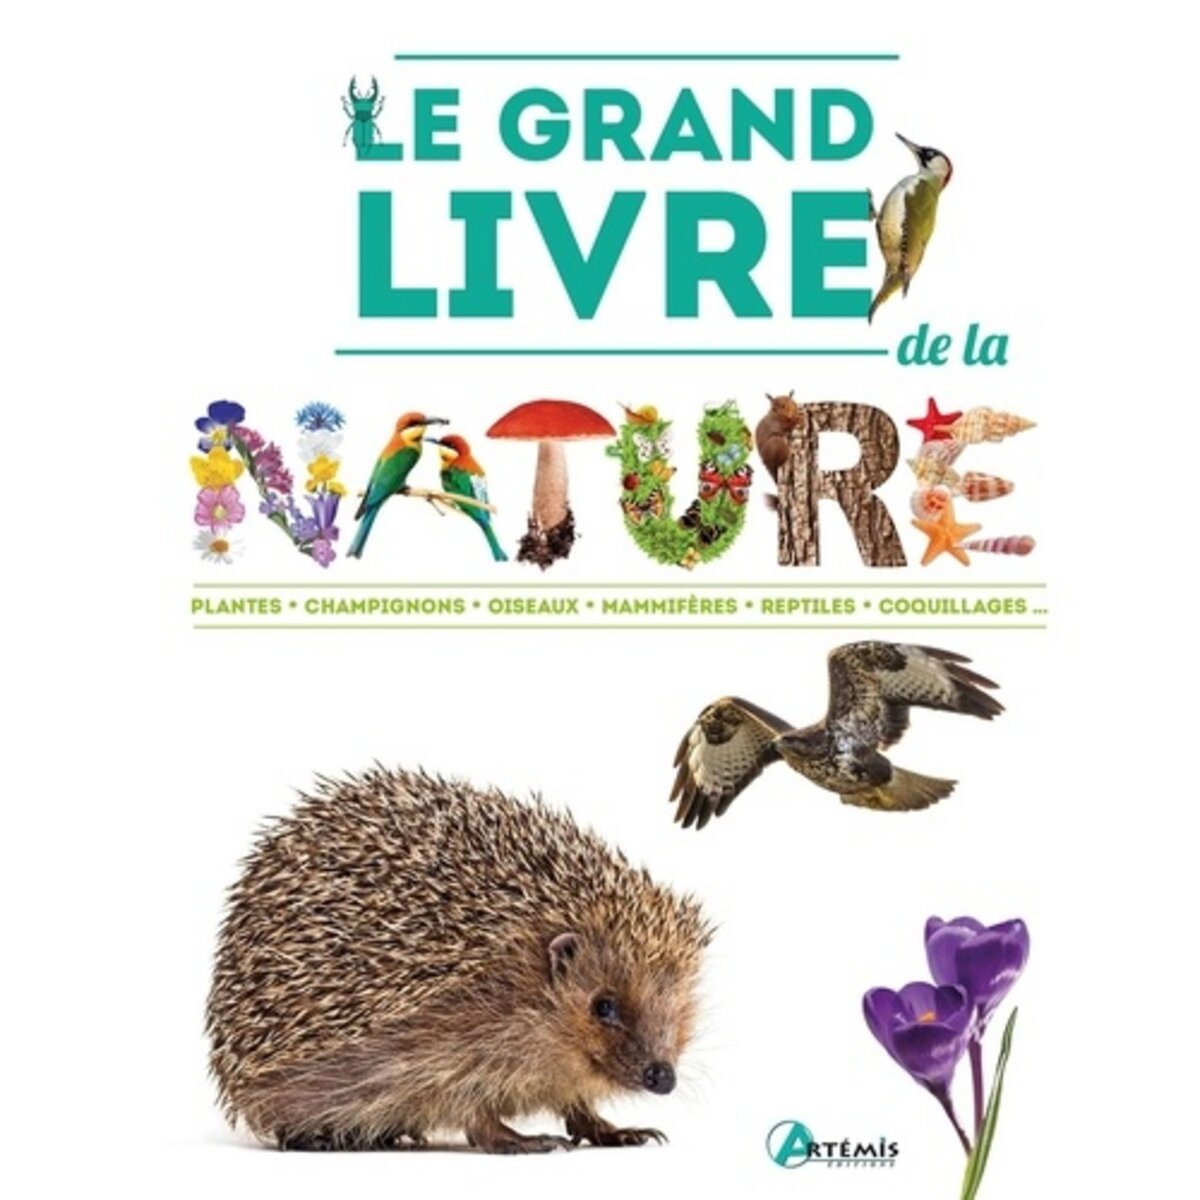  LE GRAND LIVRE DE LA NATURE, Artémis